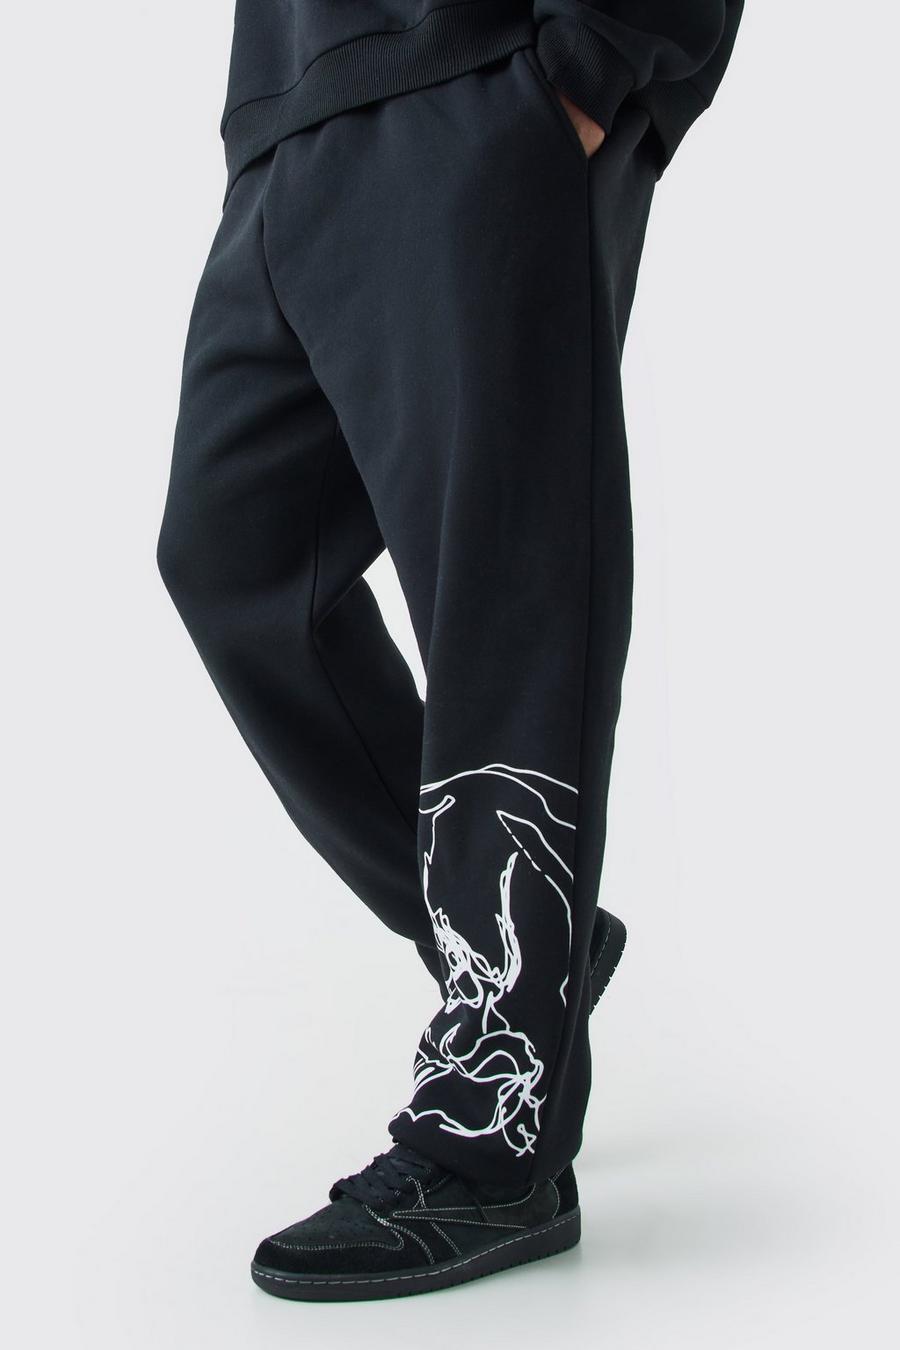 Pantaloni tuta Plus Size Regular Fit con teschio disegnato a linee, Black nero